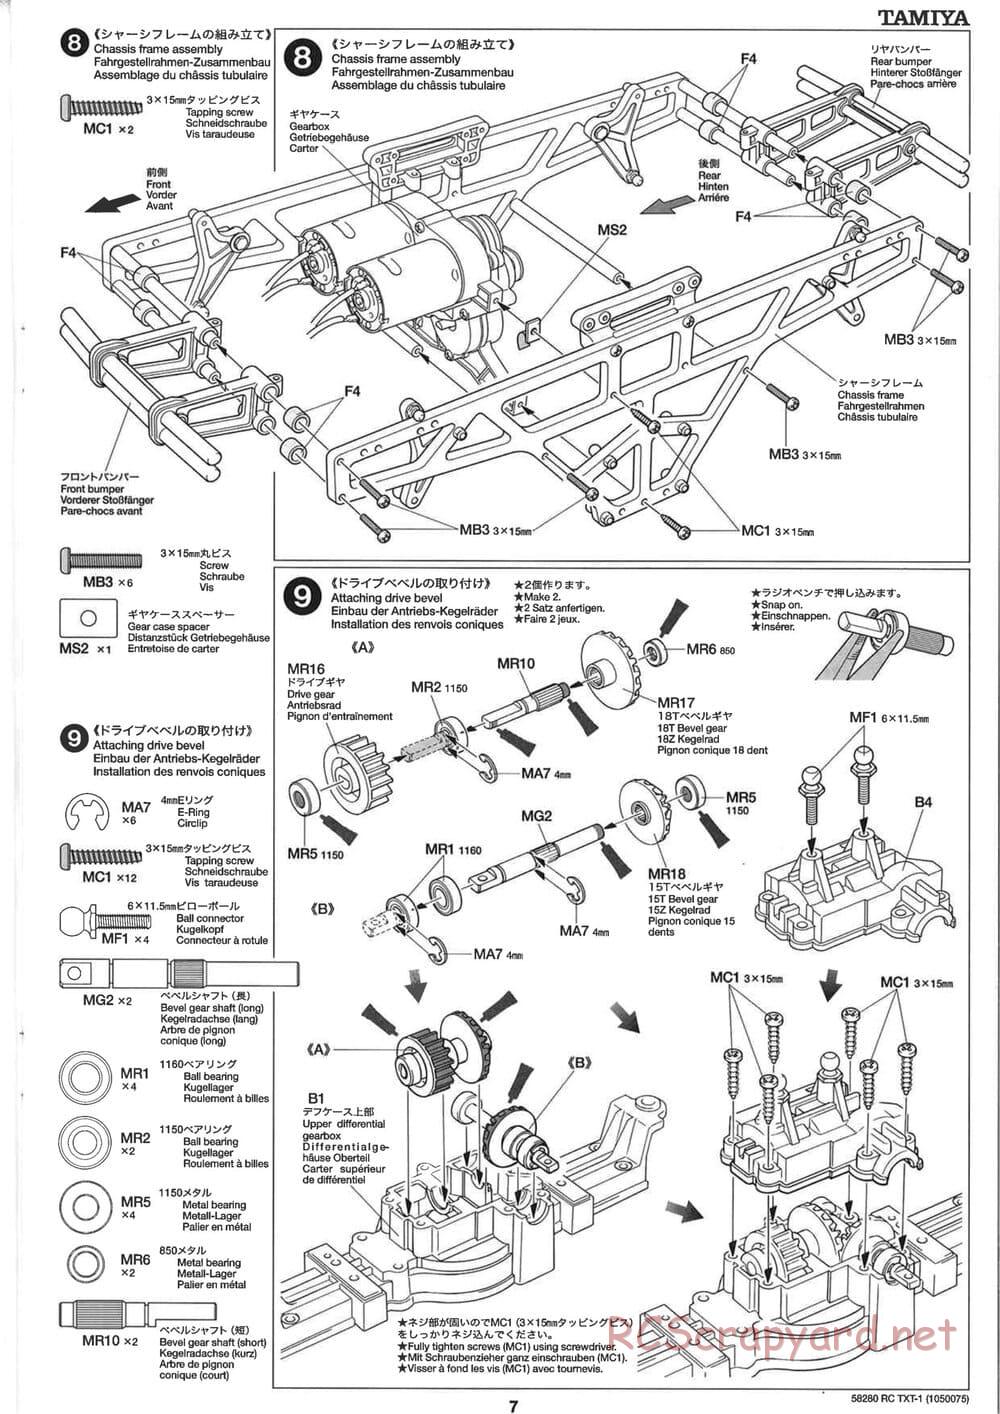 Tamiya - TXT-1 (Tamiya Xtreme Truck) Chassis - Manual - Page 7